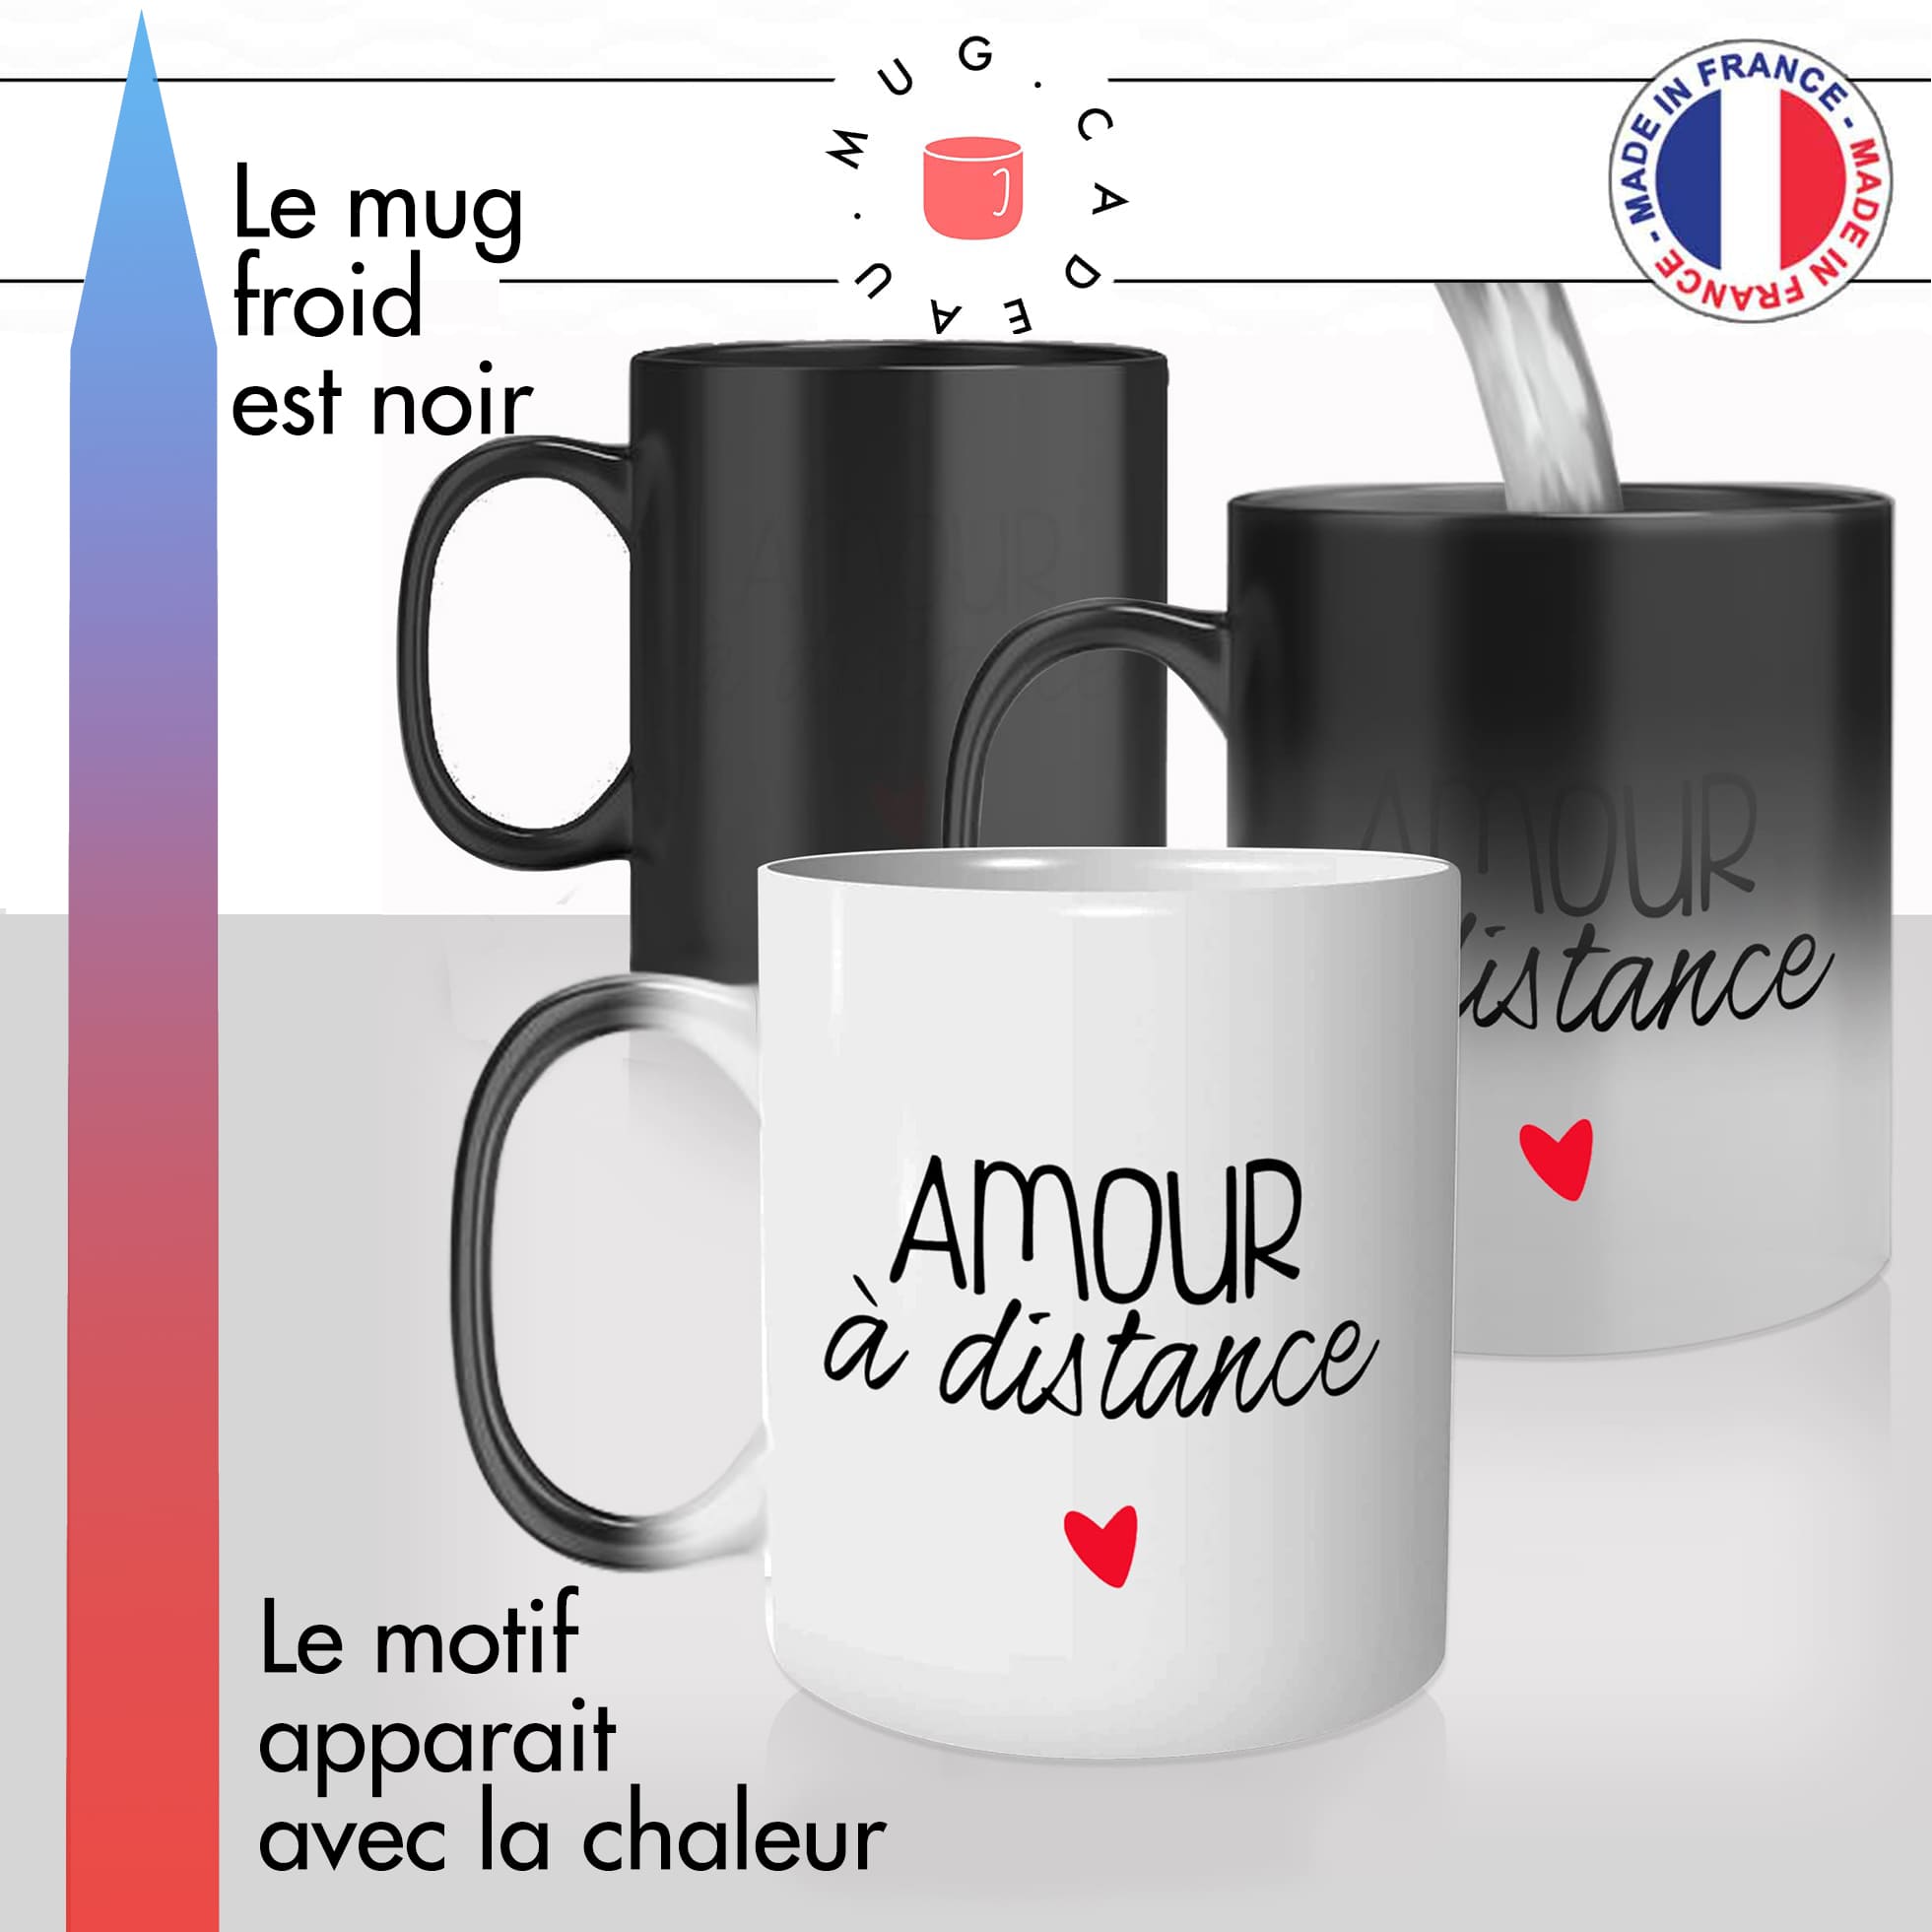 mug magique thermoréactif thermo chauffant personnalisé couple amour a distance saint valentin relation amoureuse idée cadeau fun original